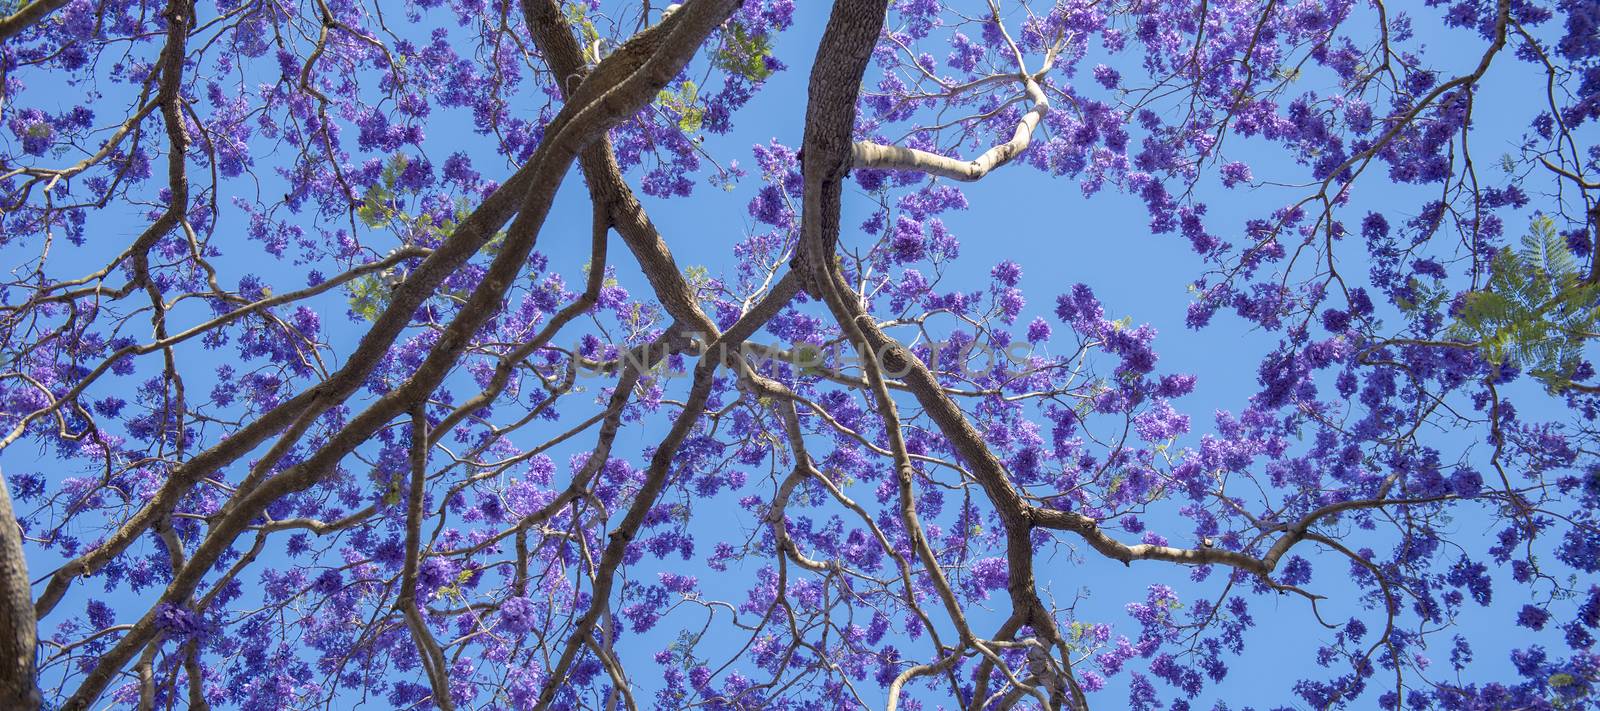 Beautiful deep purple coloured jacaranda tree in bloom in Brisbane, Queensland.